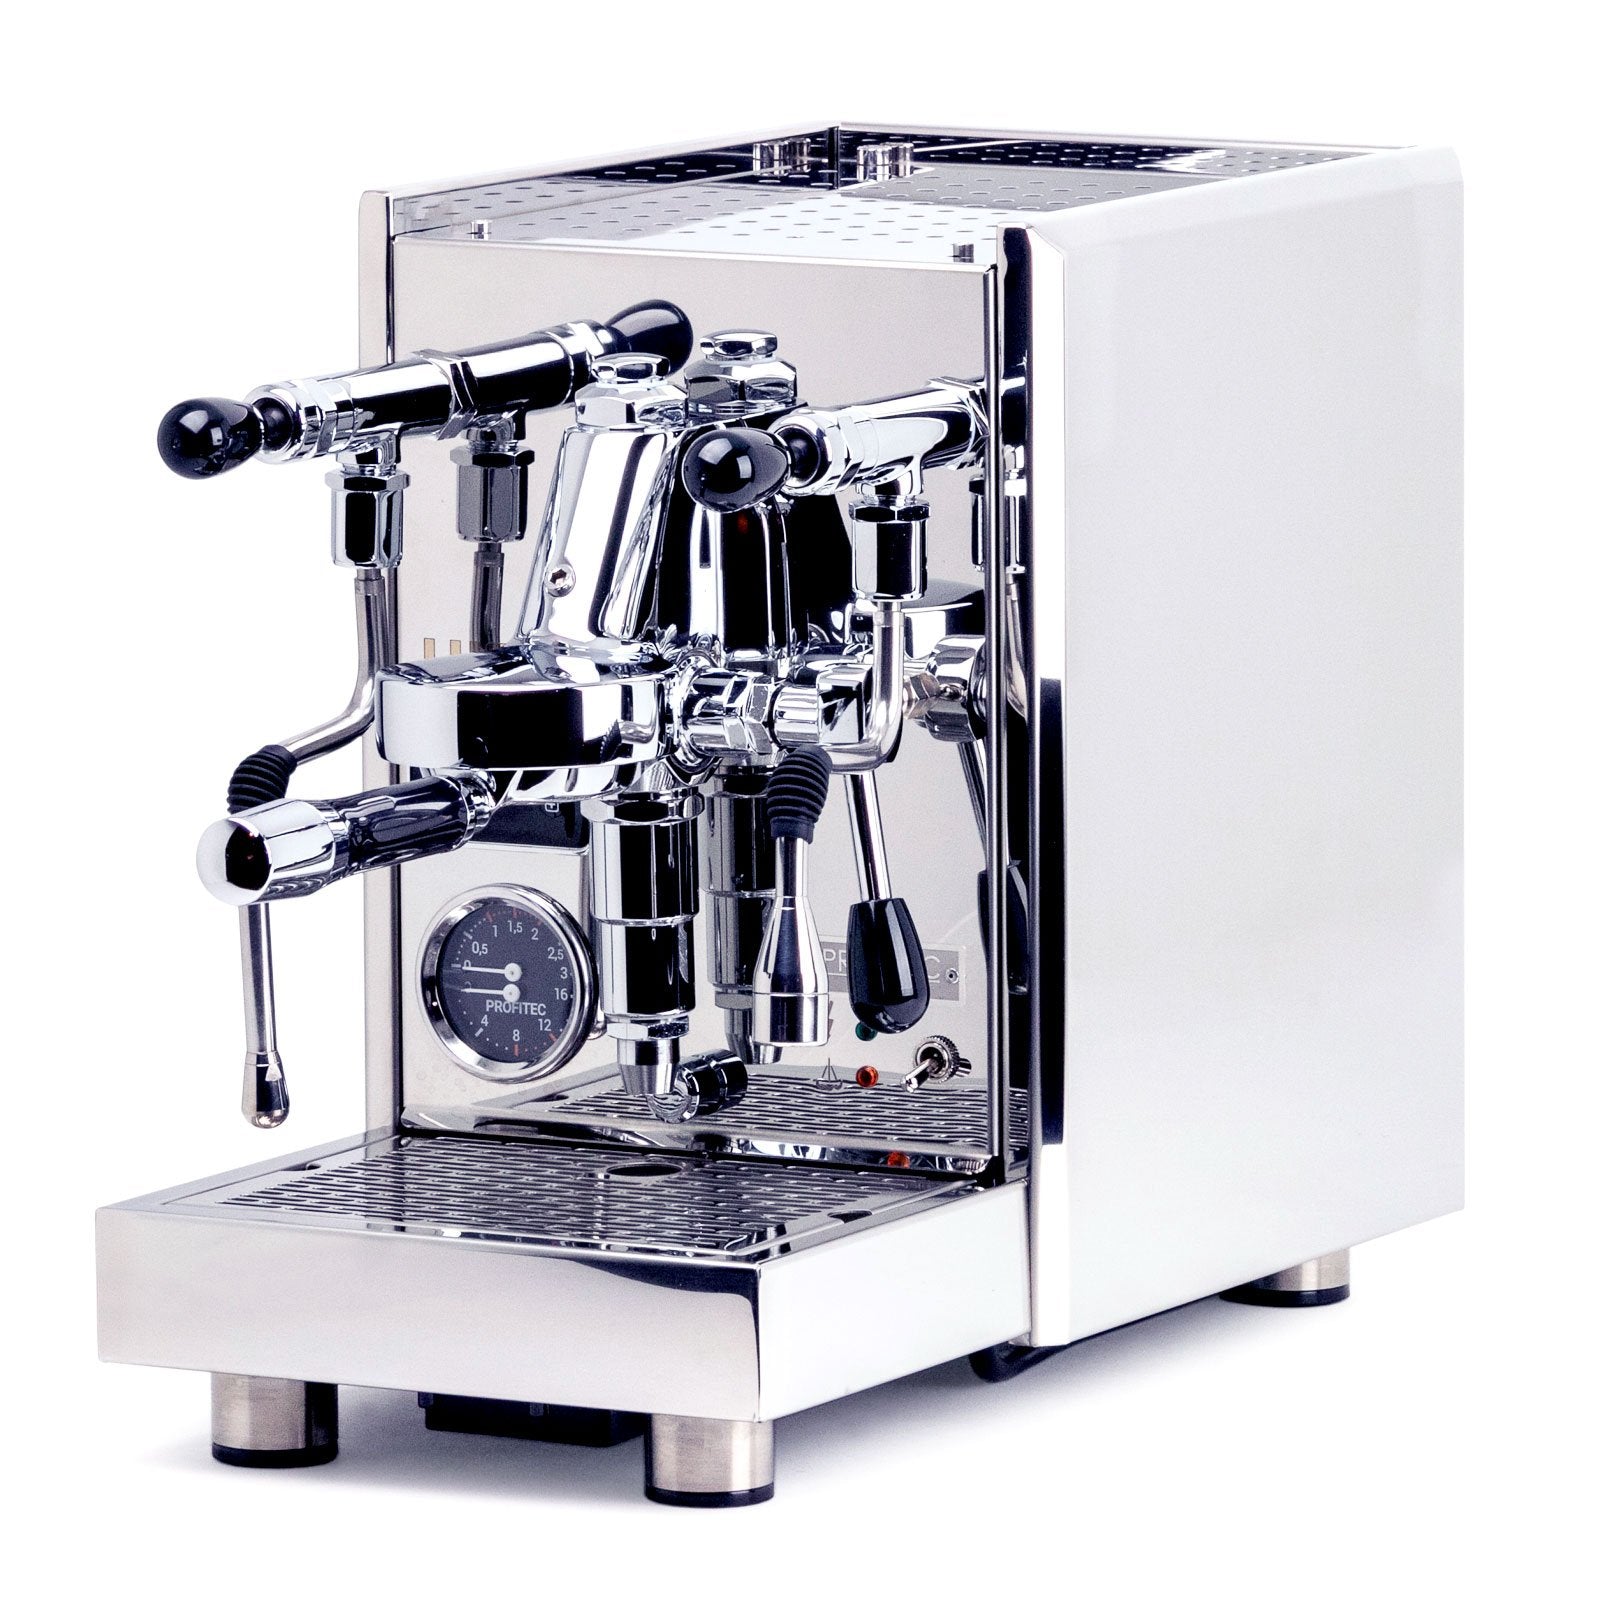 Lucca S58 Espresso Machine By Profitec Clive Coffee